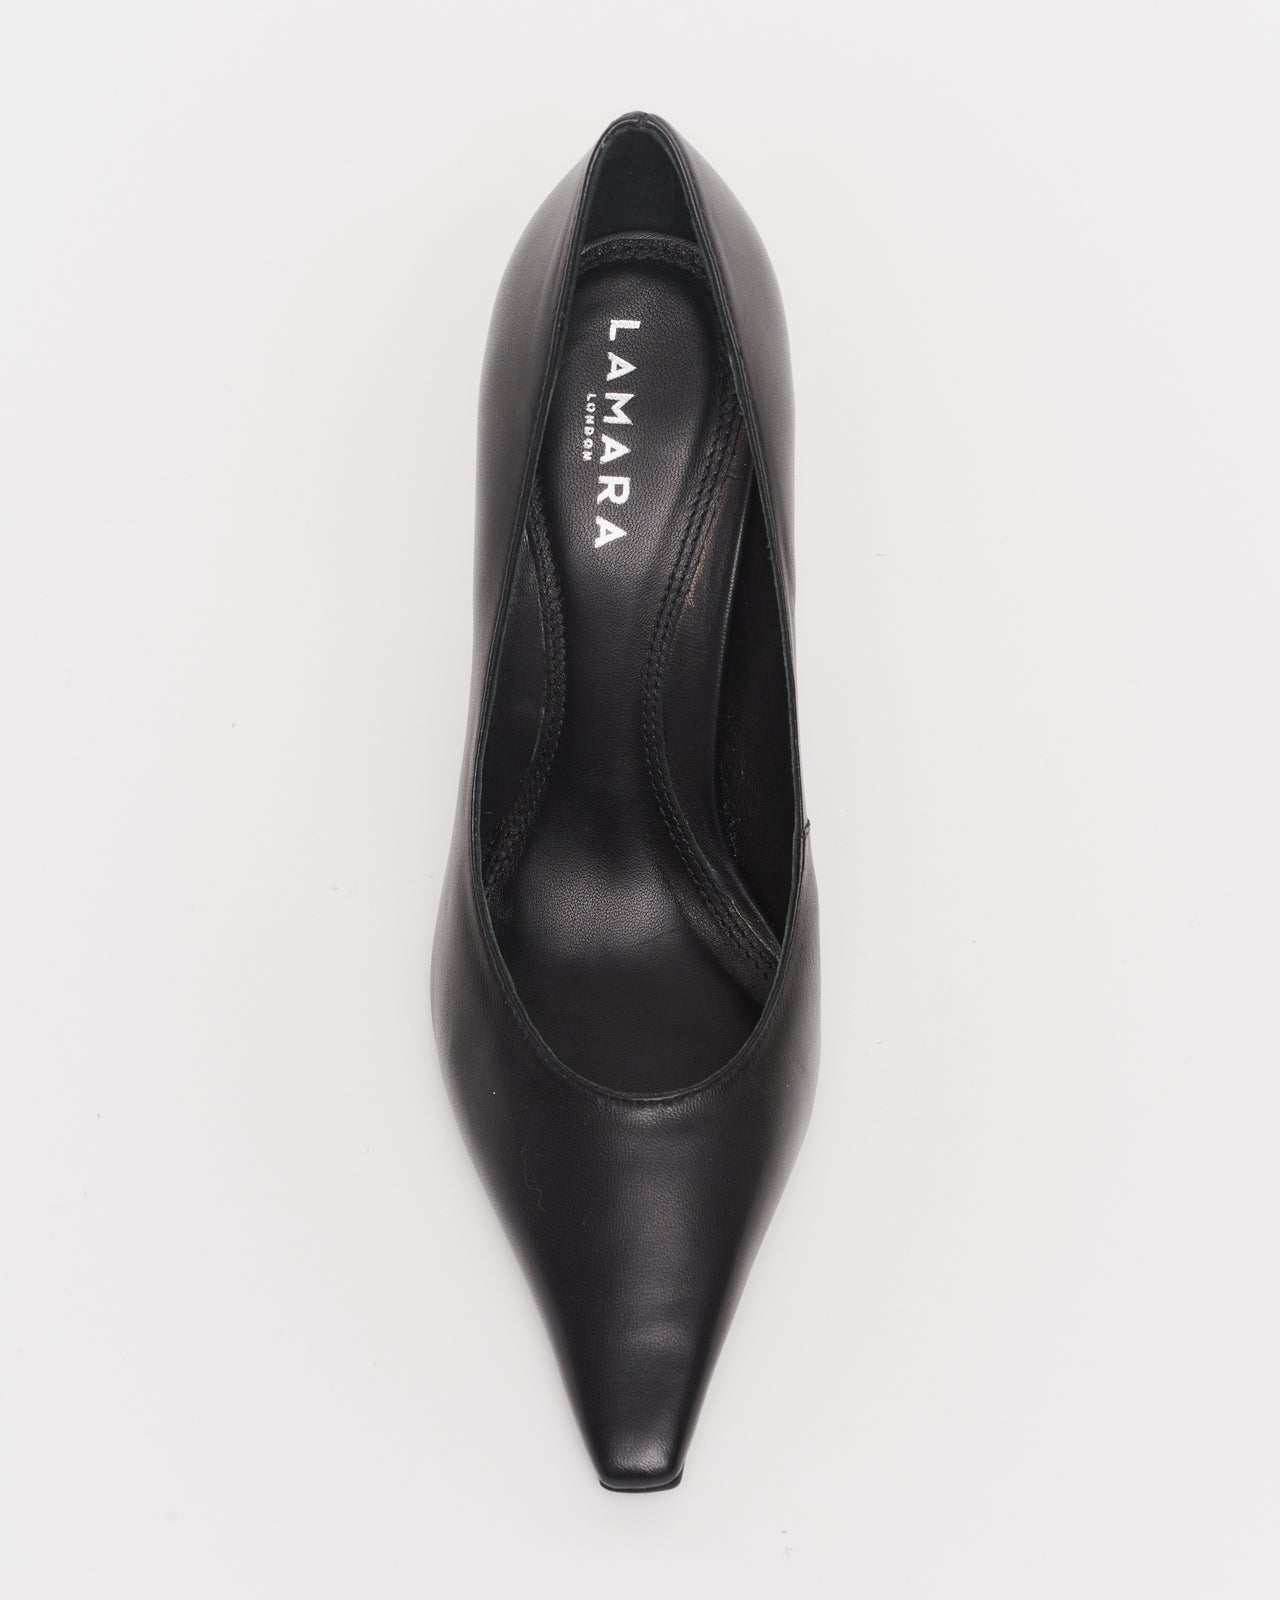 Jenn Court Shoes - Black